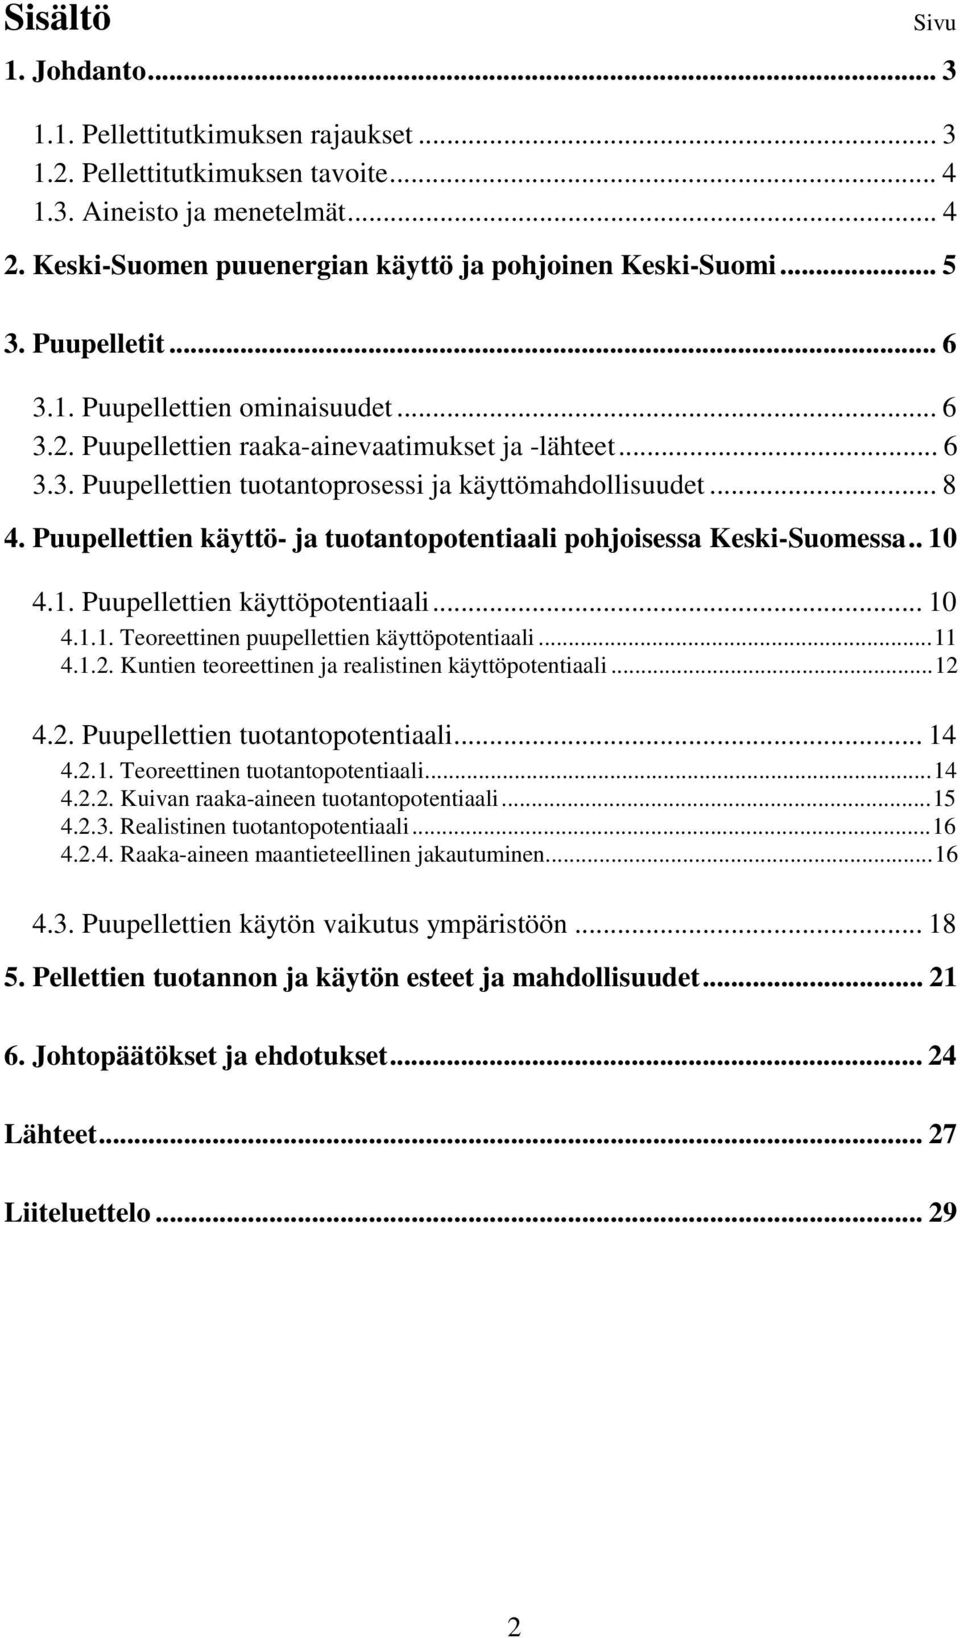 .. 8 4. Puupellettien käyttö- ja tuotantopotentiaali pohjoisessa Keski-Suomessa.. 10 4.1. Puupellettien käyttöpotentiaali... 10 4.1.1. Teoreettinen puupellettien käyttöpotentiaali...11 4.1.2.